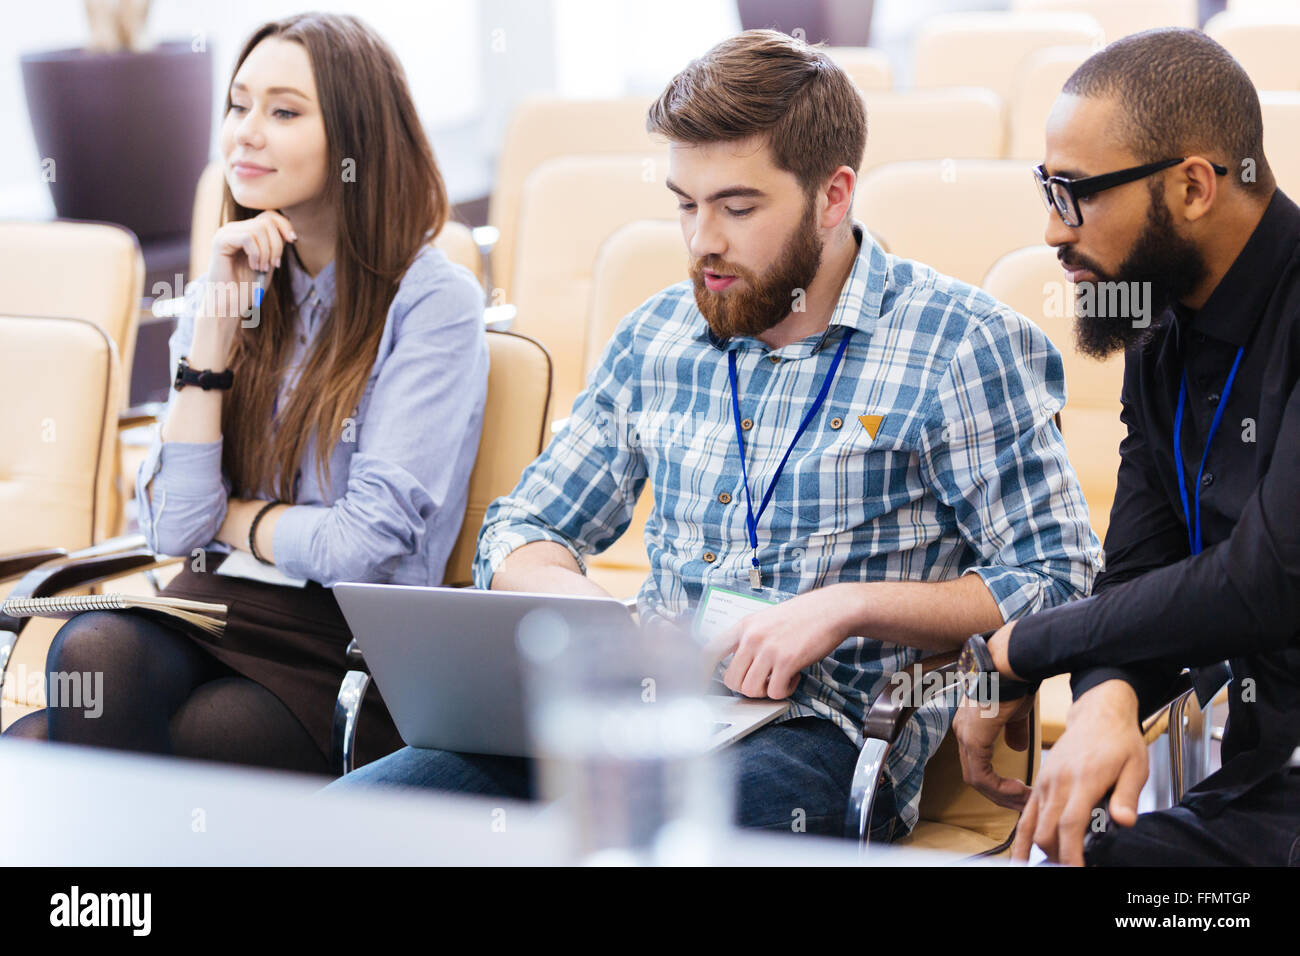 Multiethnische Gruppe von jungen Geschäftsleuten mit Laptop sitzen auf Treffen im Konferenzsaal Stockfoto